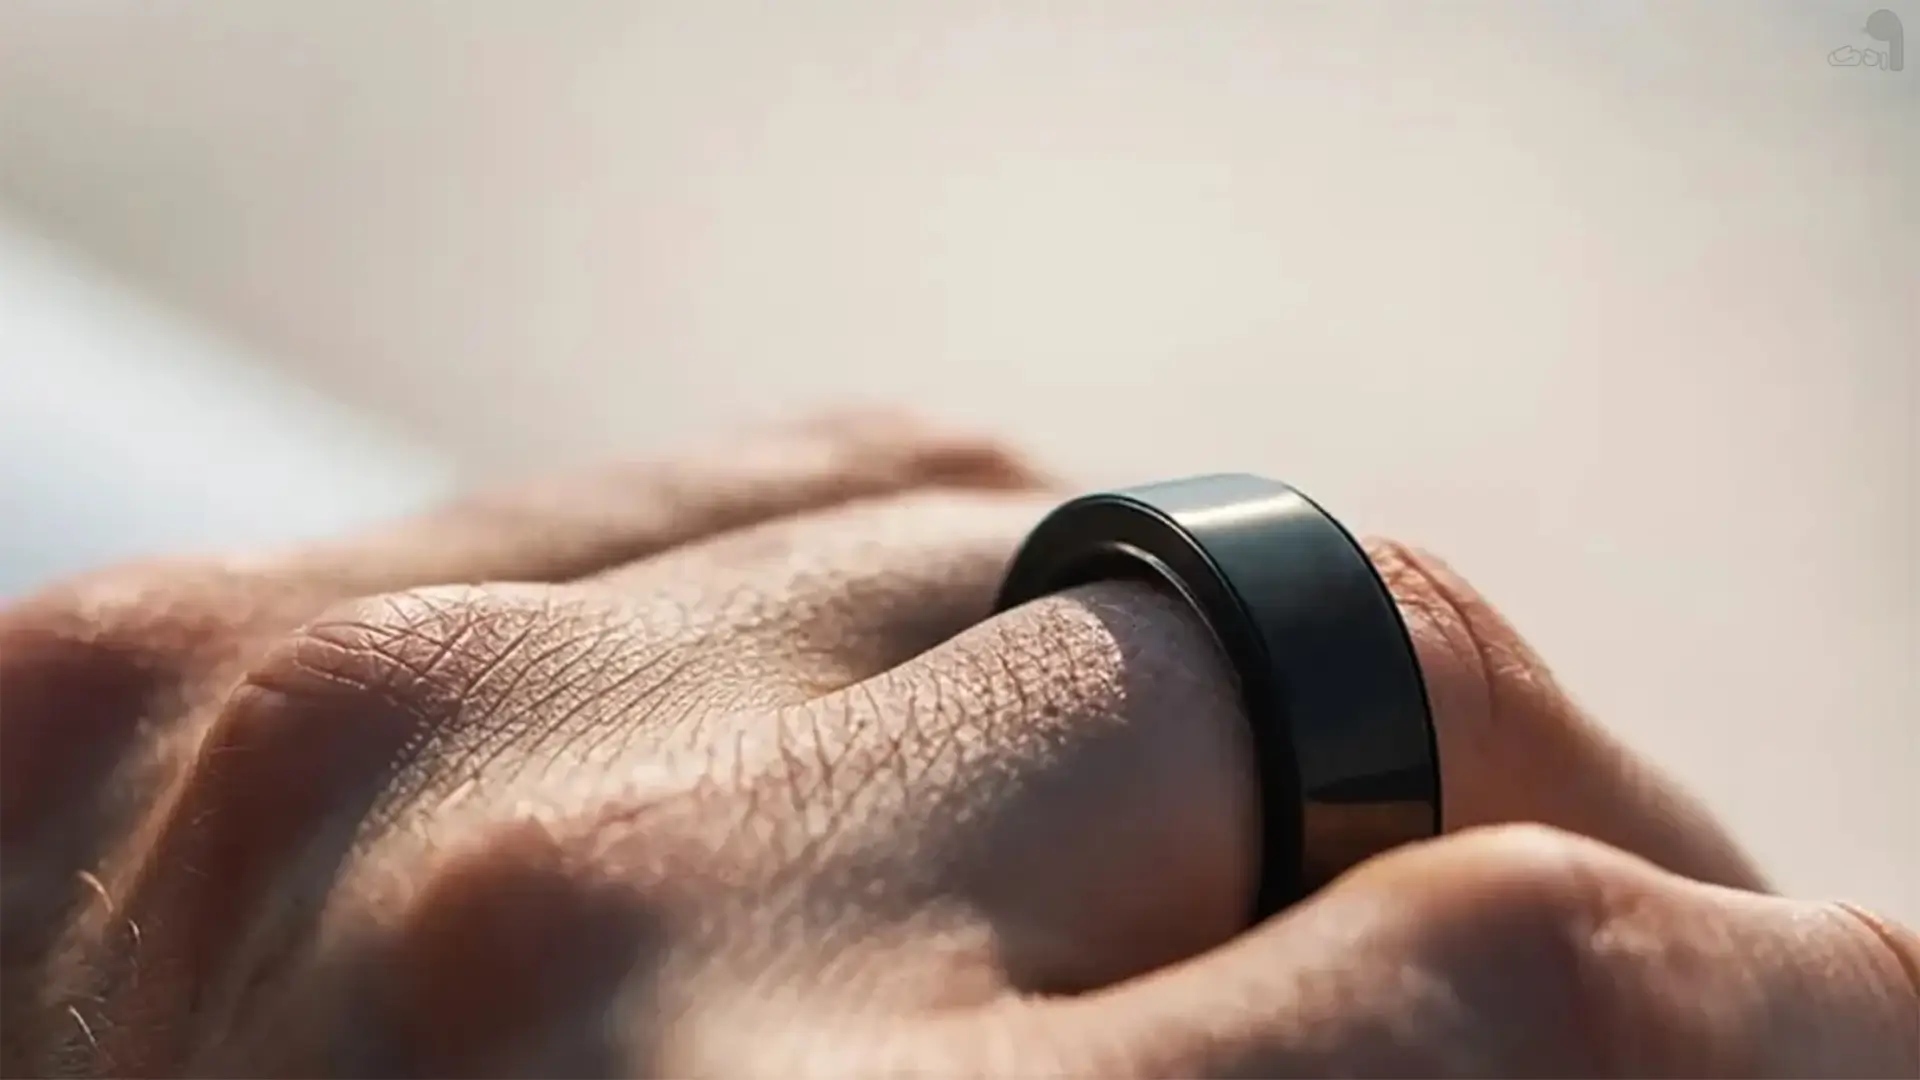 سامسونگ قصد دارد یک حلقه هوشمند بسازد - اردک دیجیتال